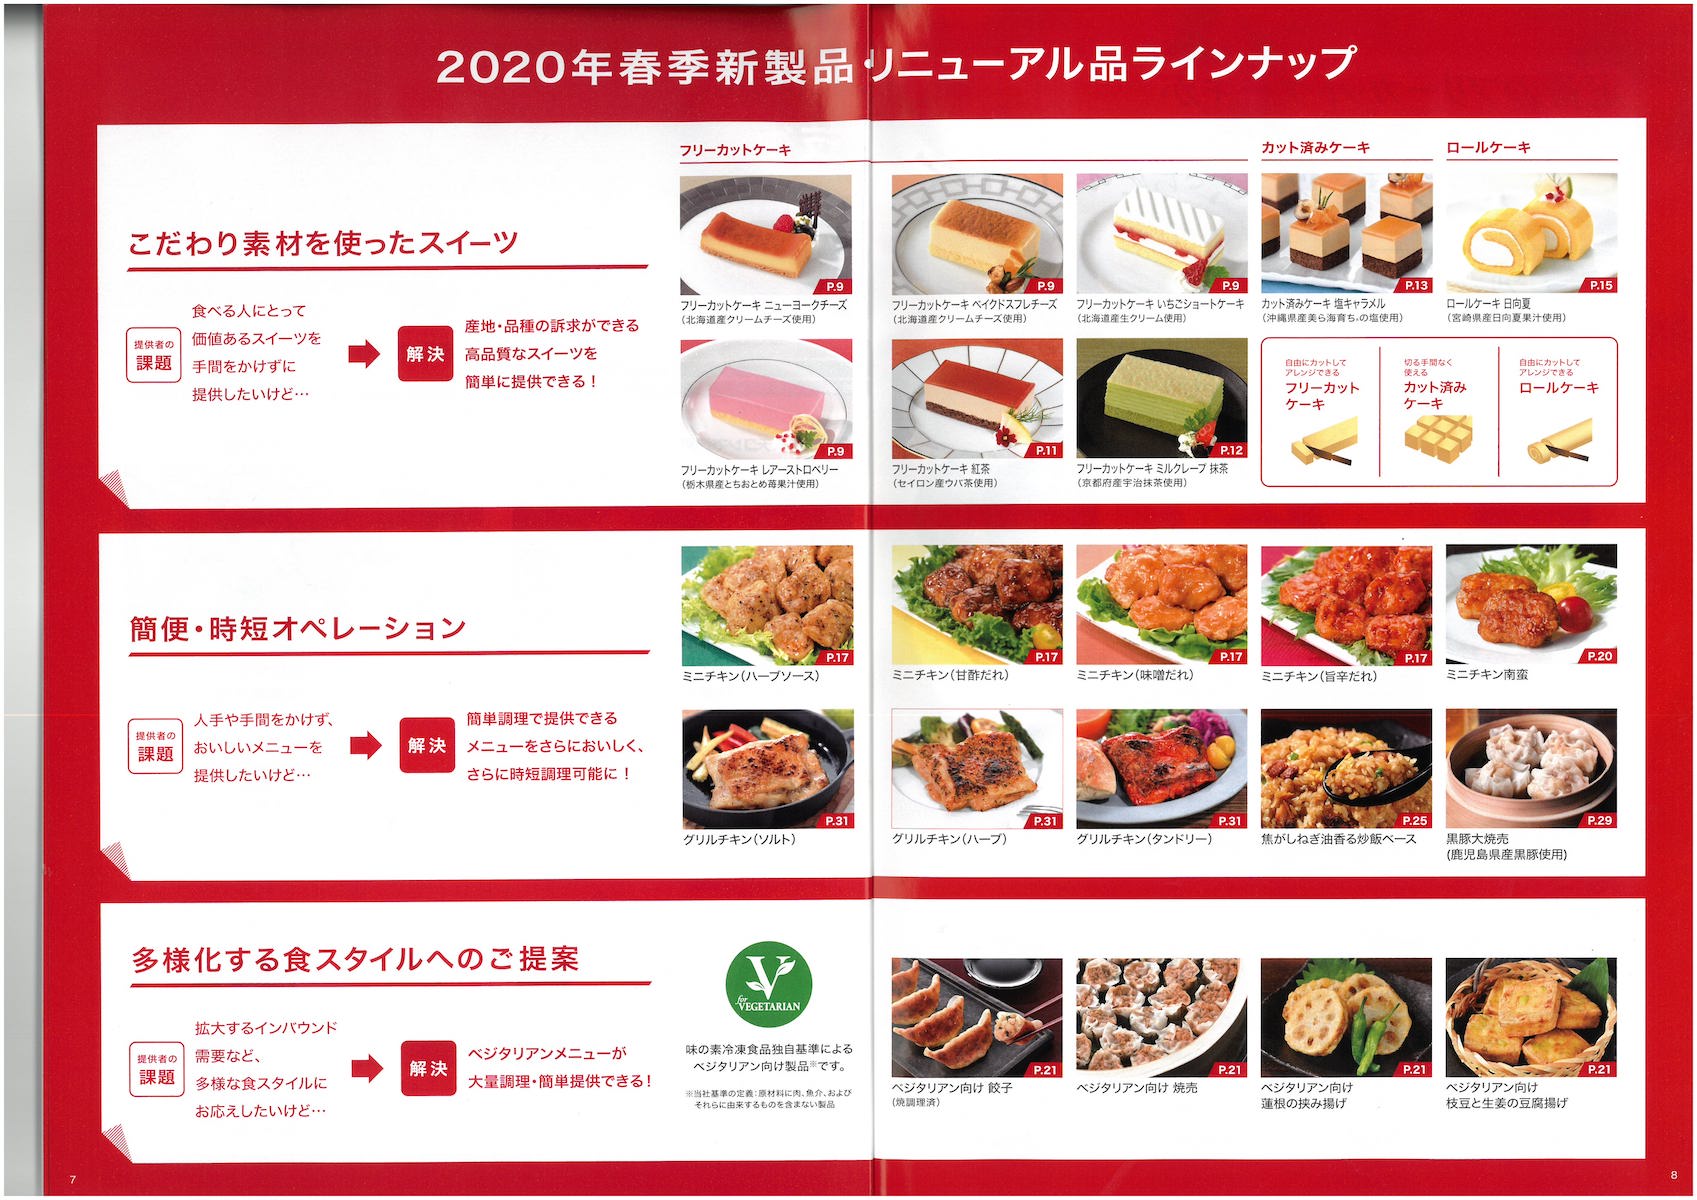 味の素冷凍食品2020総合カタログ 春季新製品・リニューアル品ラインナップ | 冷凍食品カタログ.com